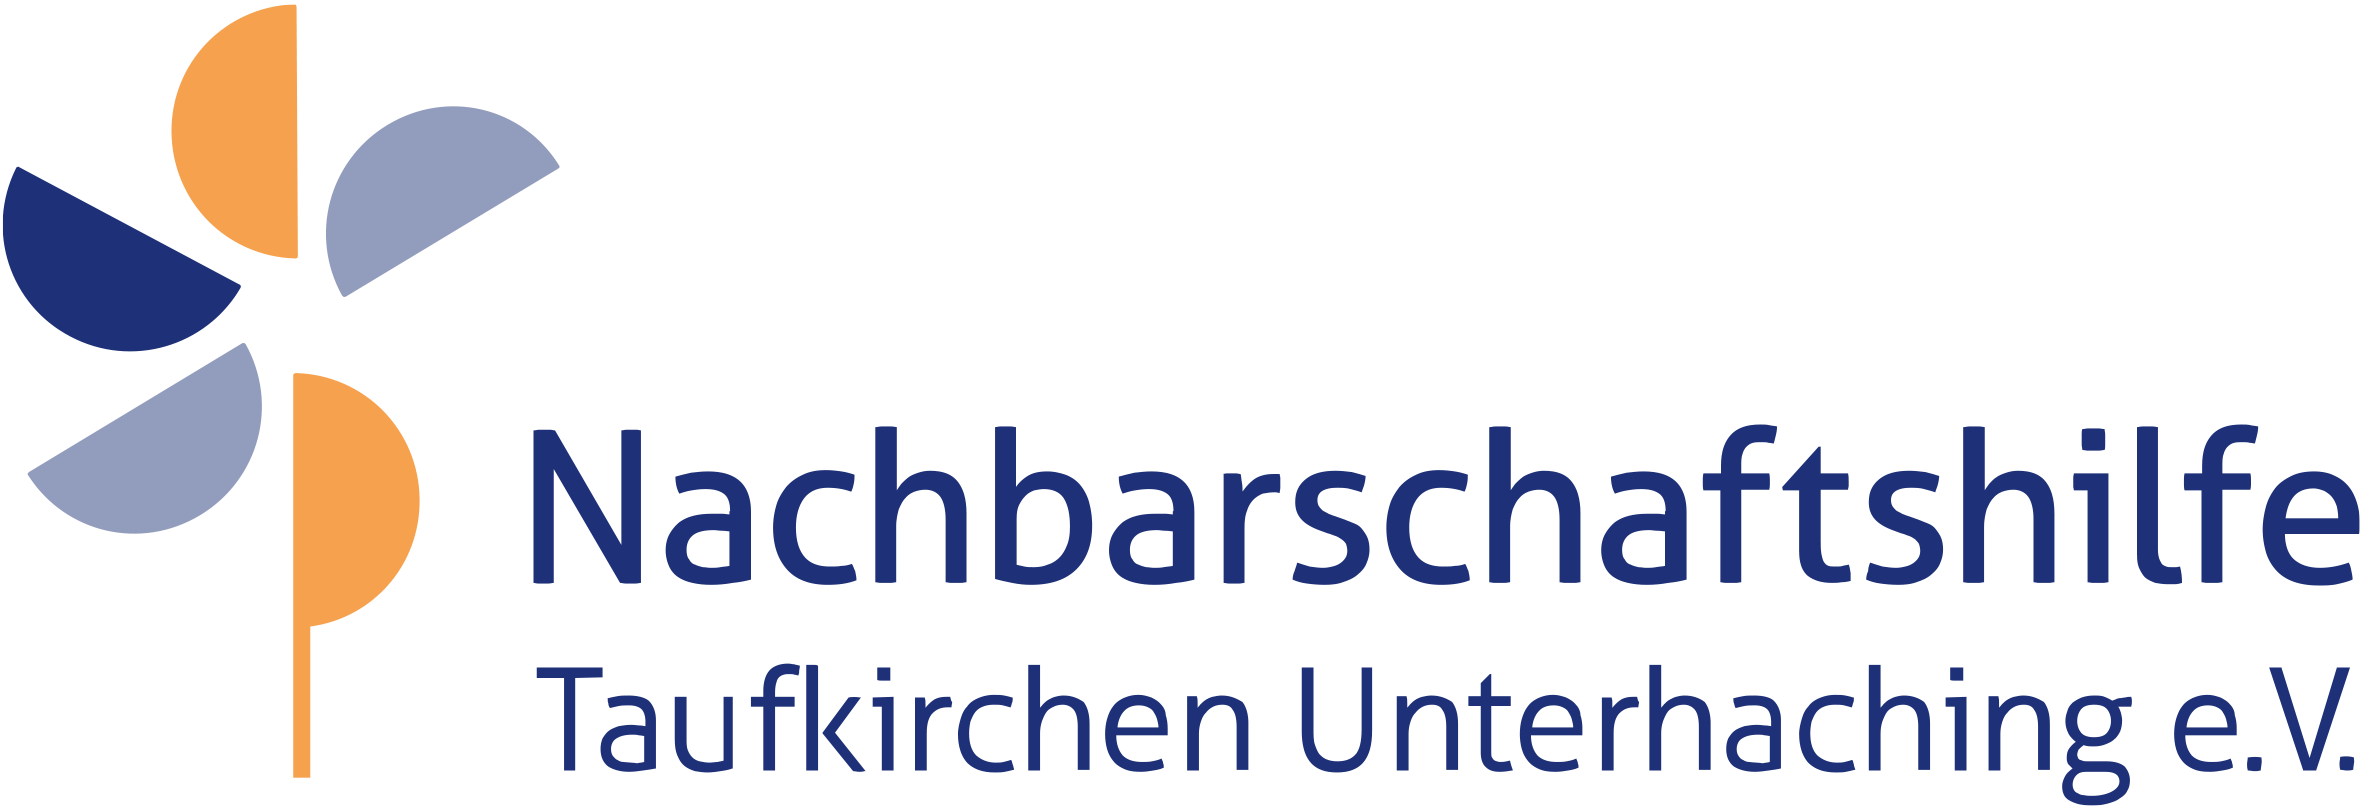 Nachbarschaftshilfe Taufkirchen Unterhaching - Großtagespflegen